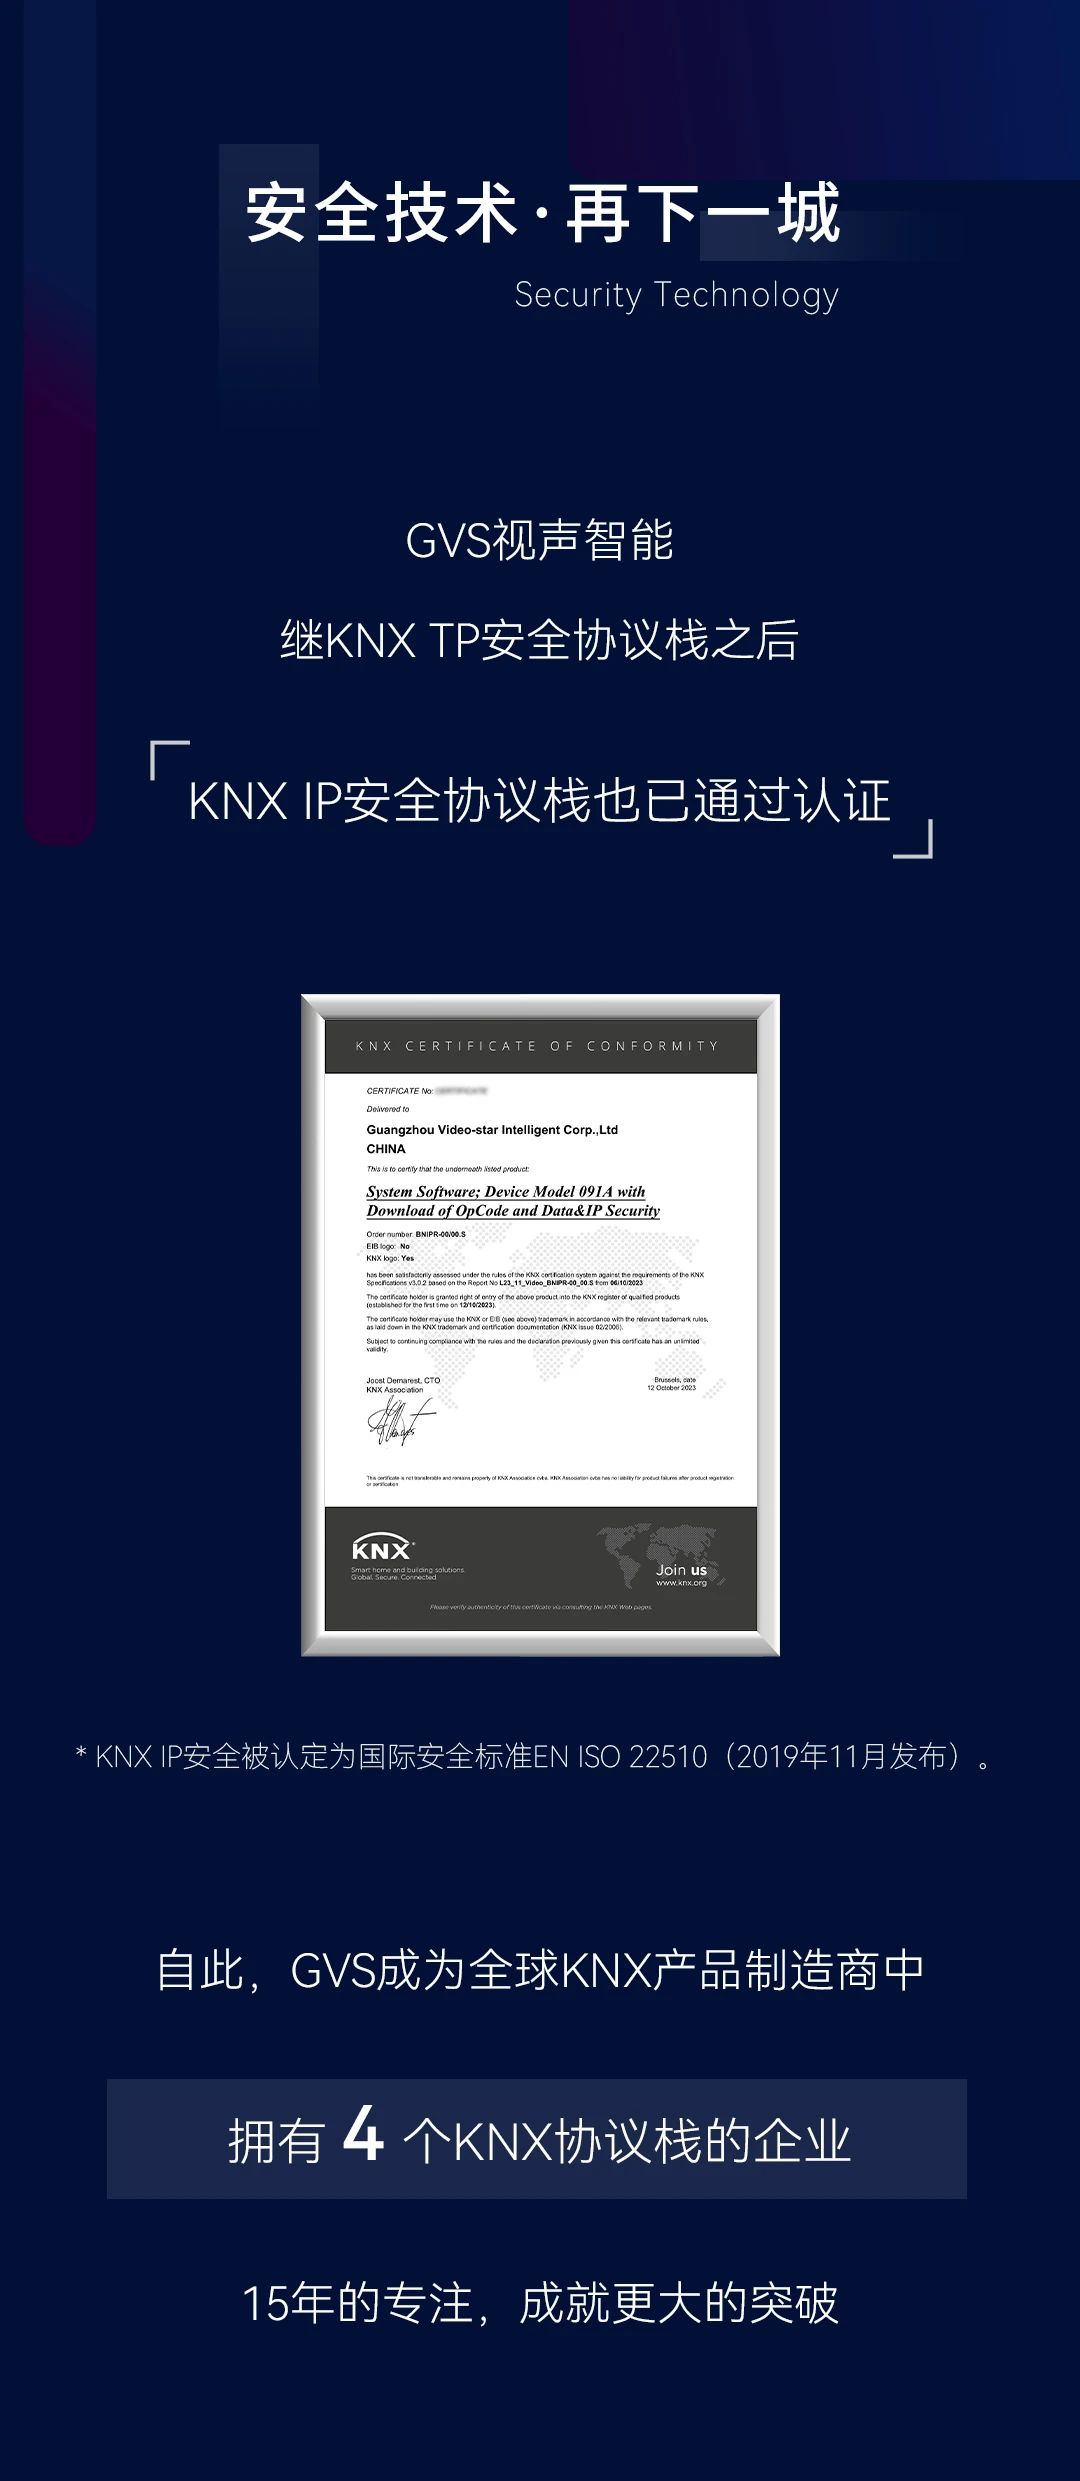 KNX IP安全协议栈